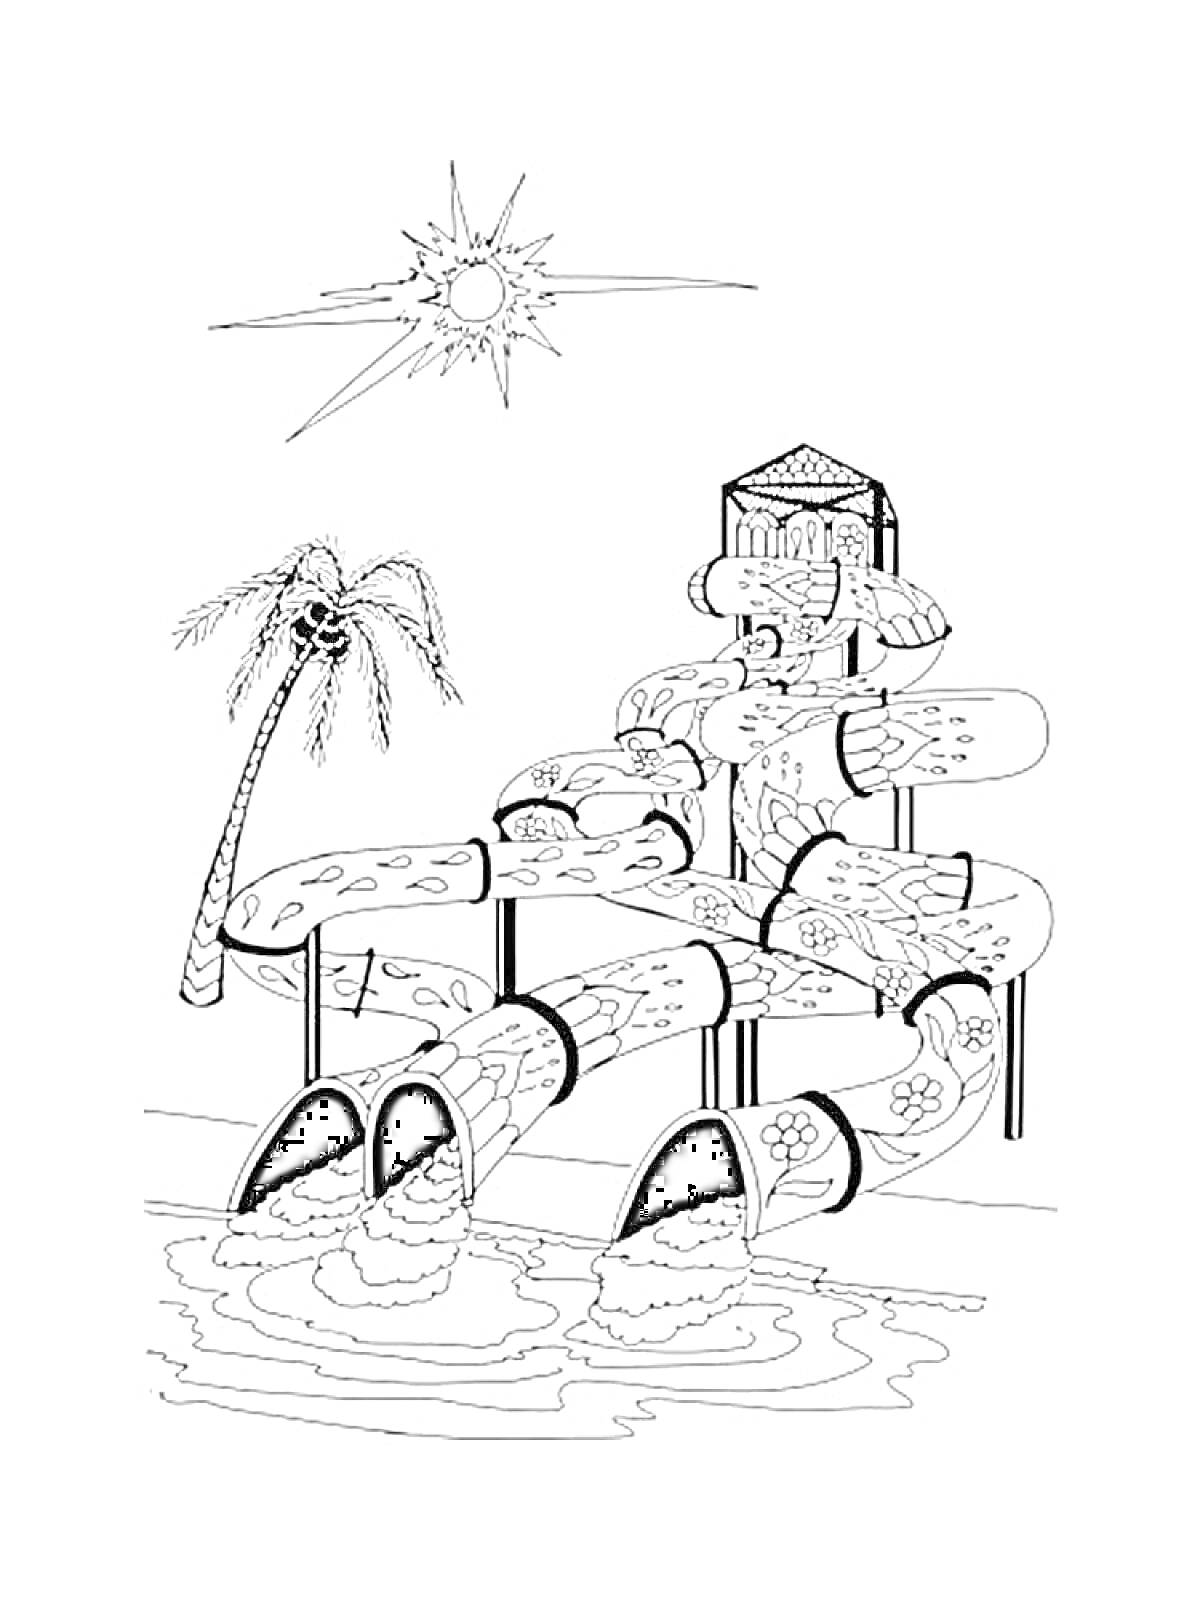 Аквапарк с водными горками и бассейном с пальмой и солнцем